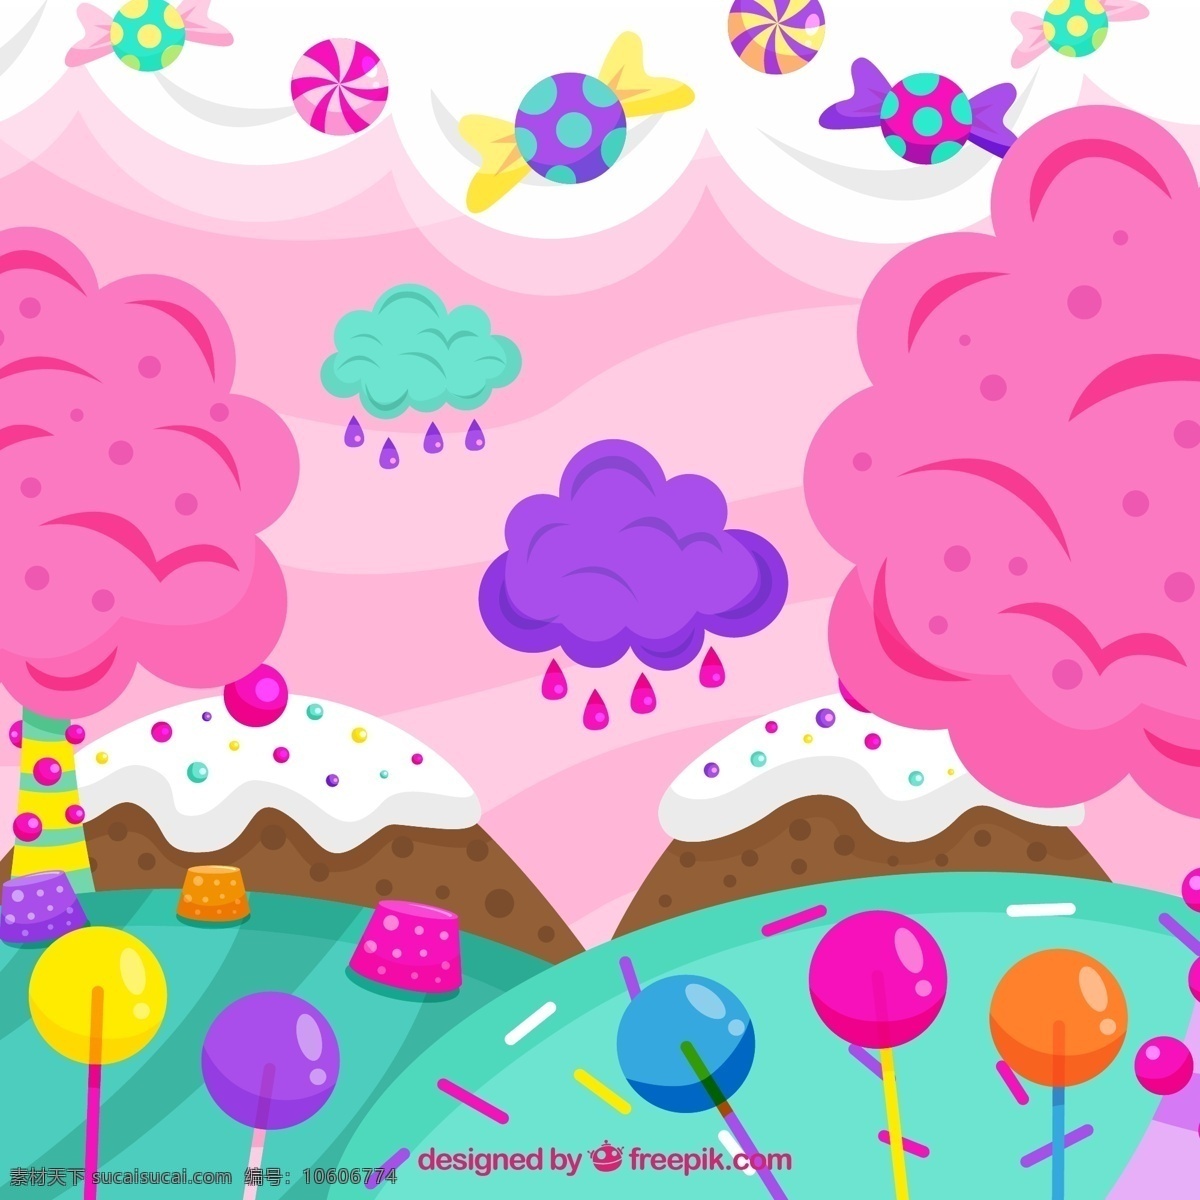 彩色 糖果 世界 硬糖 软糖 云朵 彩色糖果 树木 山啫喱 文化艺术 节日庆祝